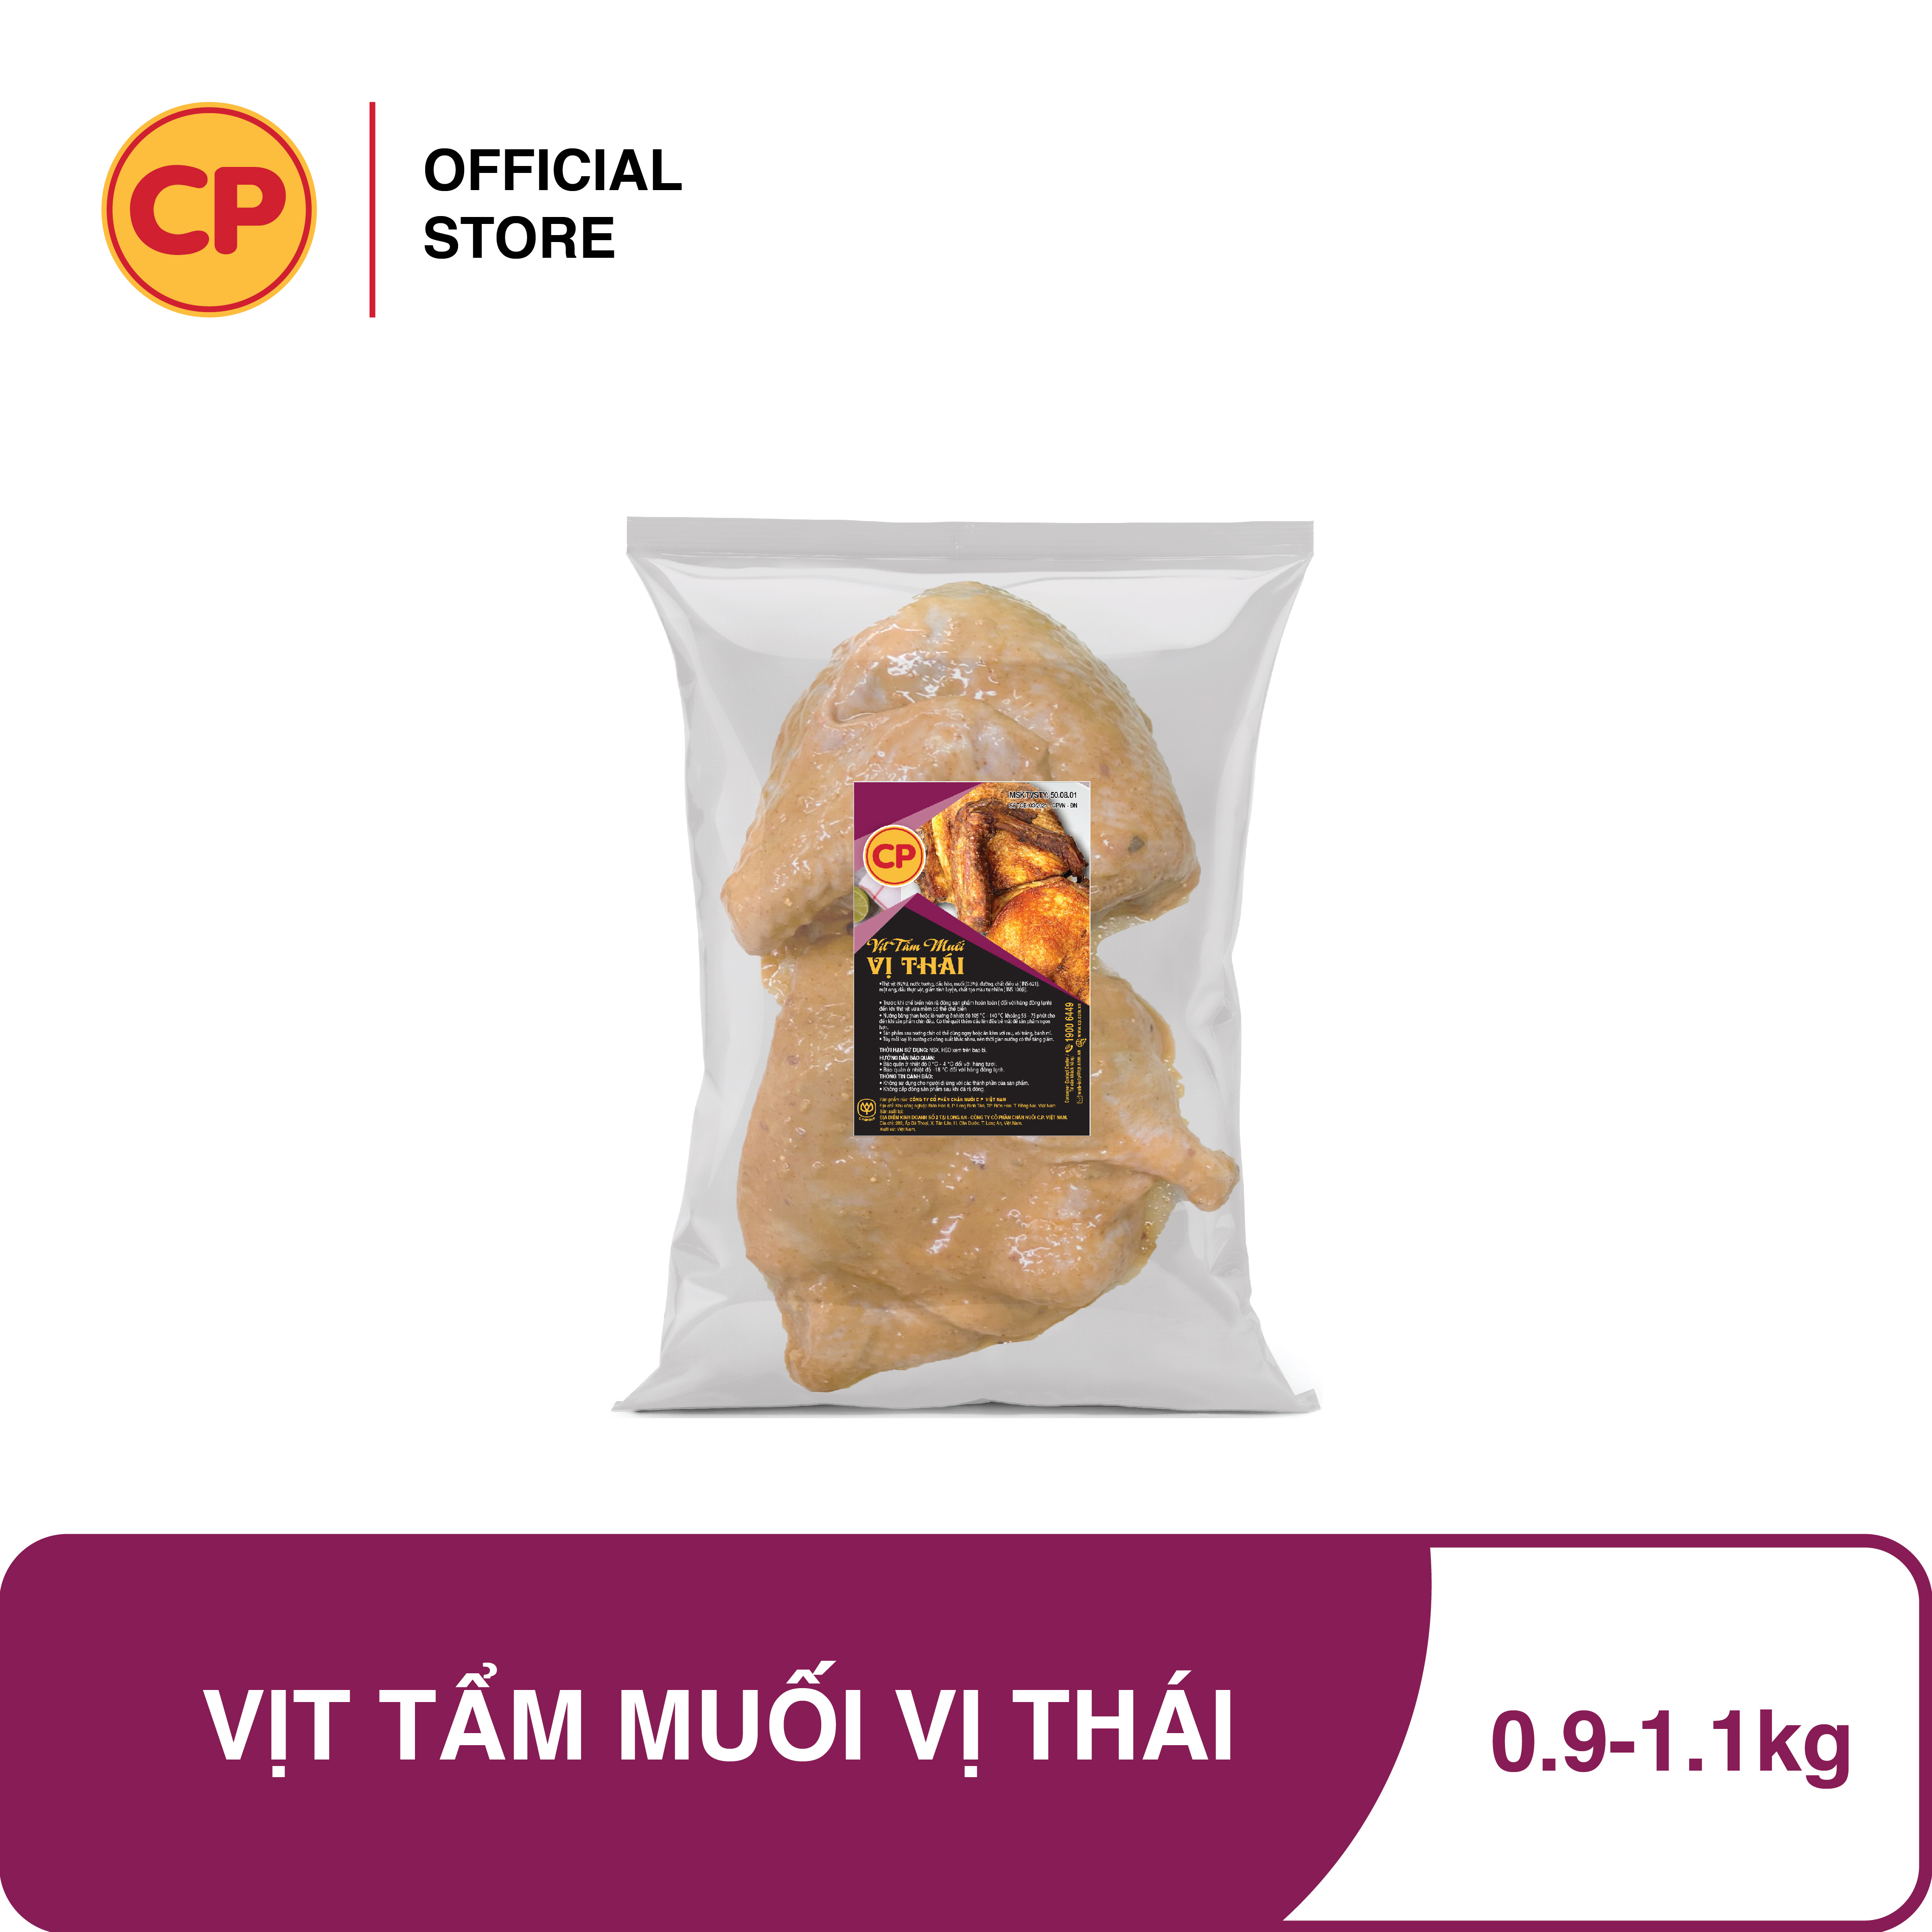 CP Vịt Tẩm Muối Vị Thái Lan - 0.9-1.1kg - Sản Phẩm Từ Vịt Cao Cấp